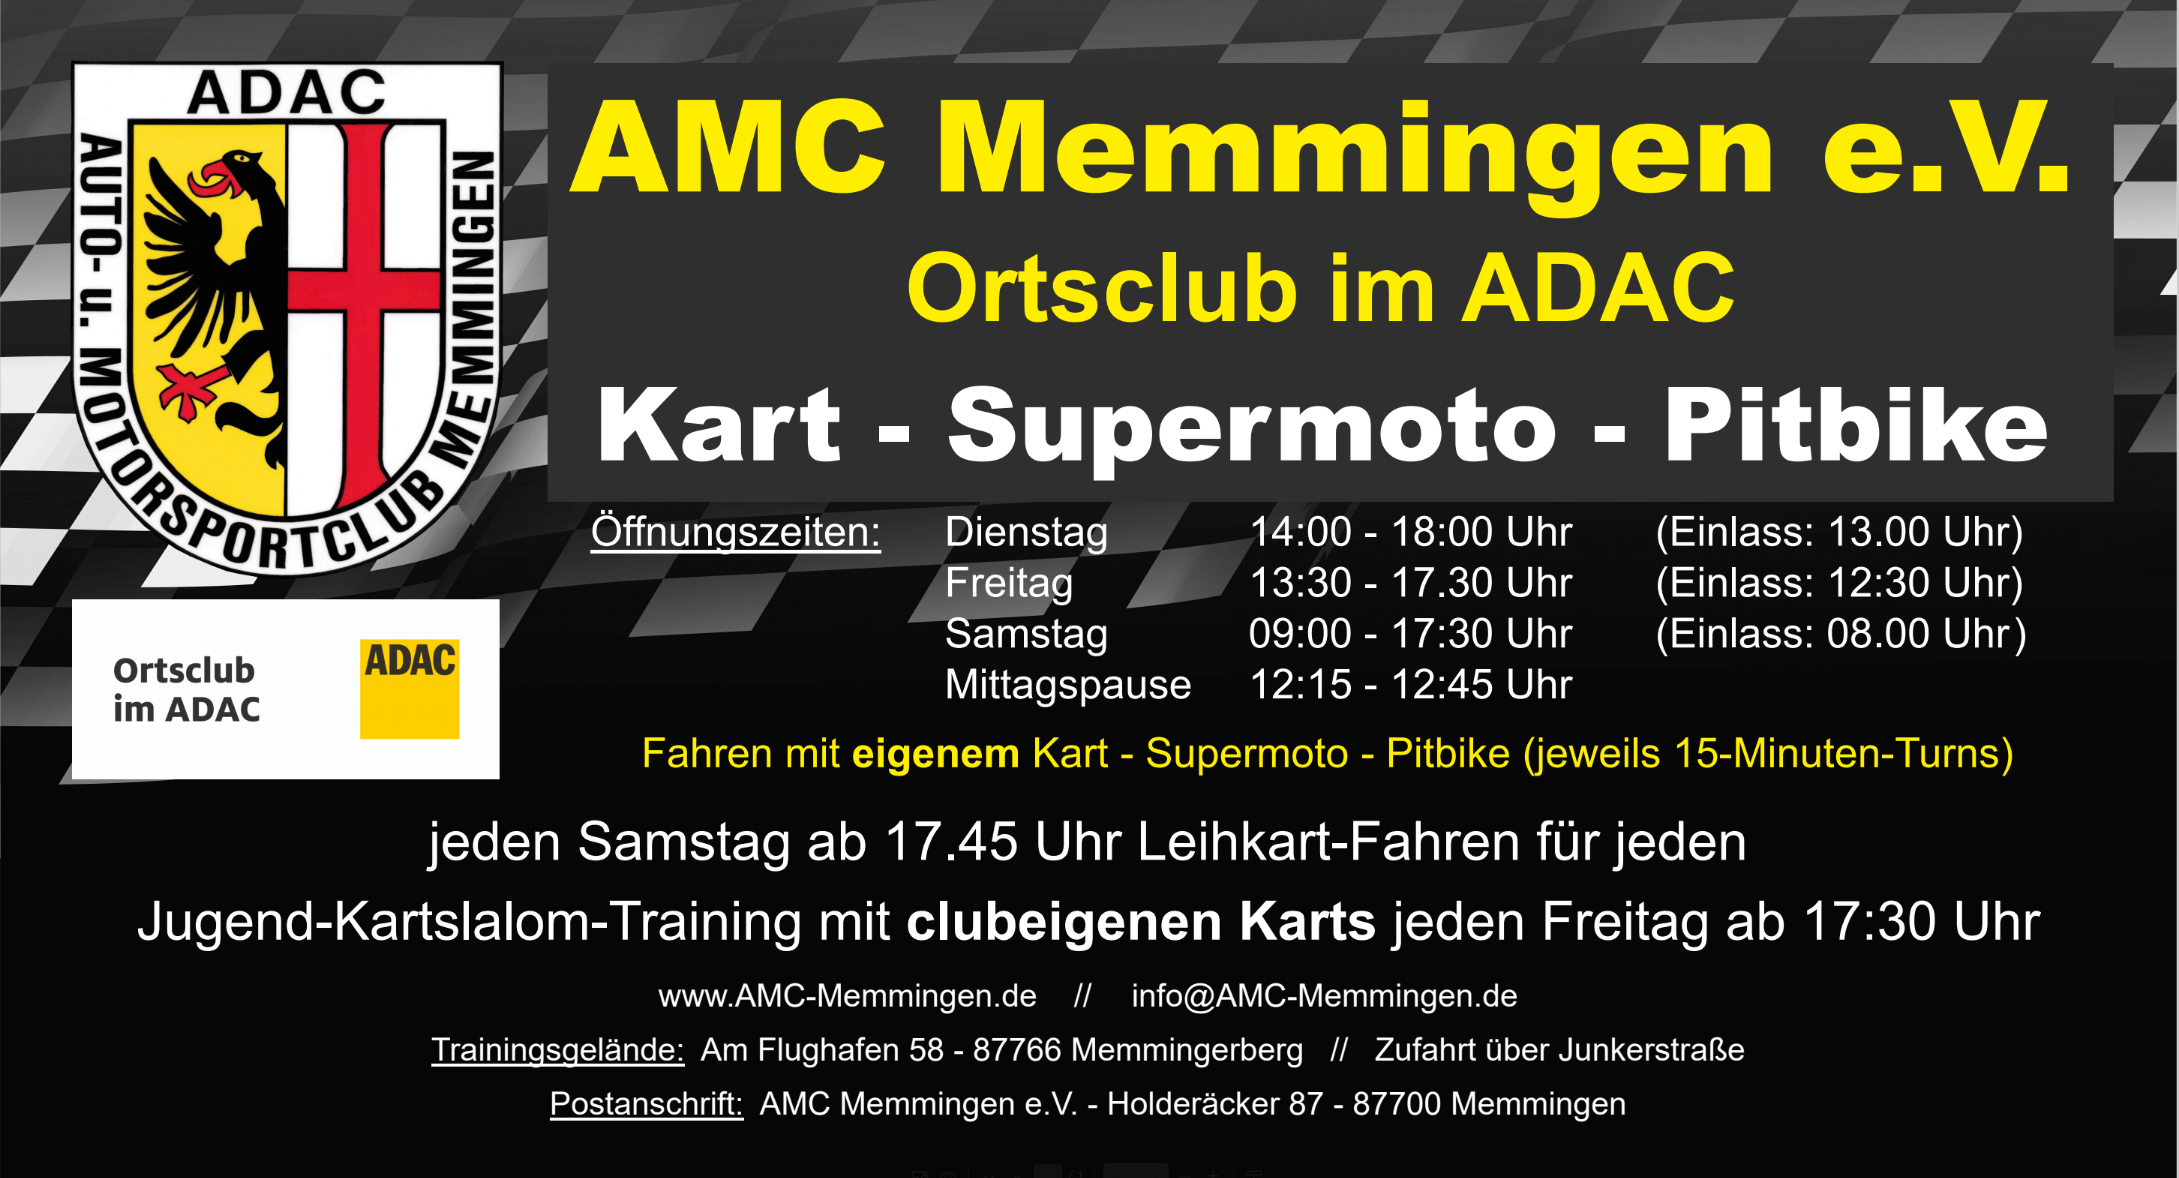 AMC-Memmingen e.V. im ADAC